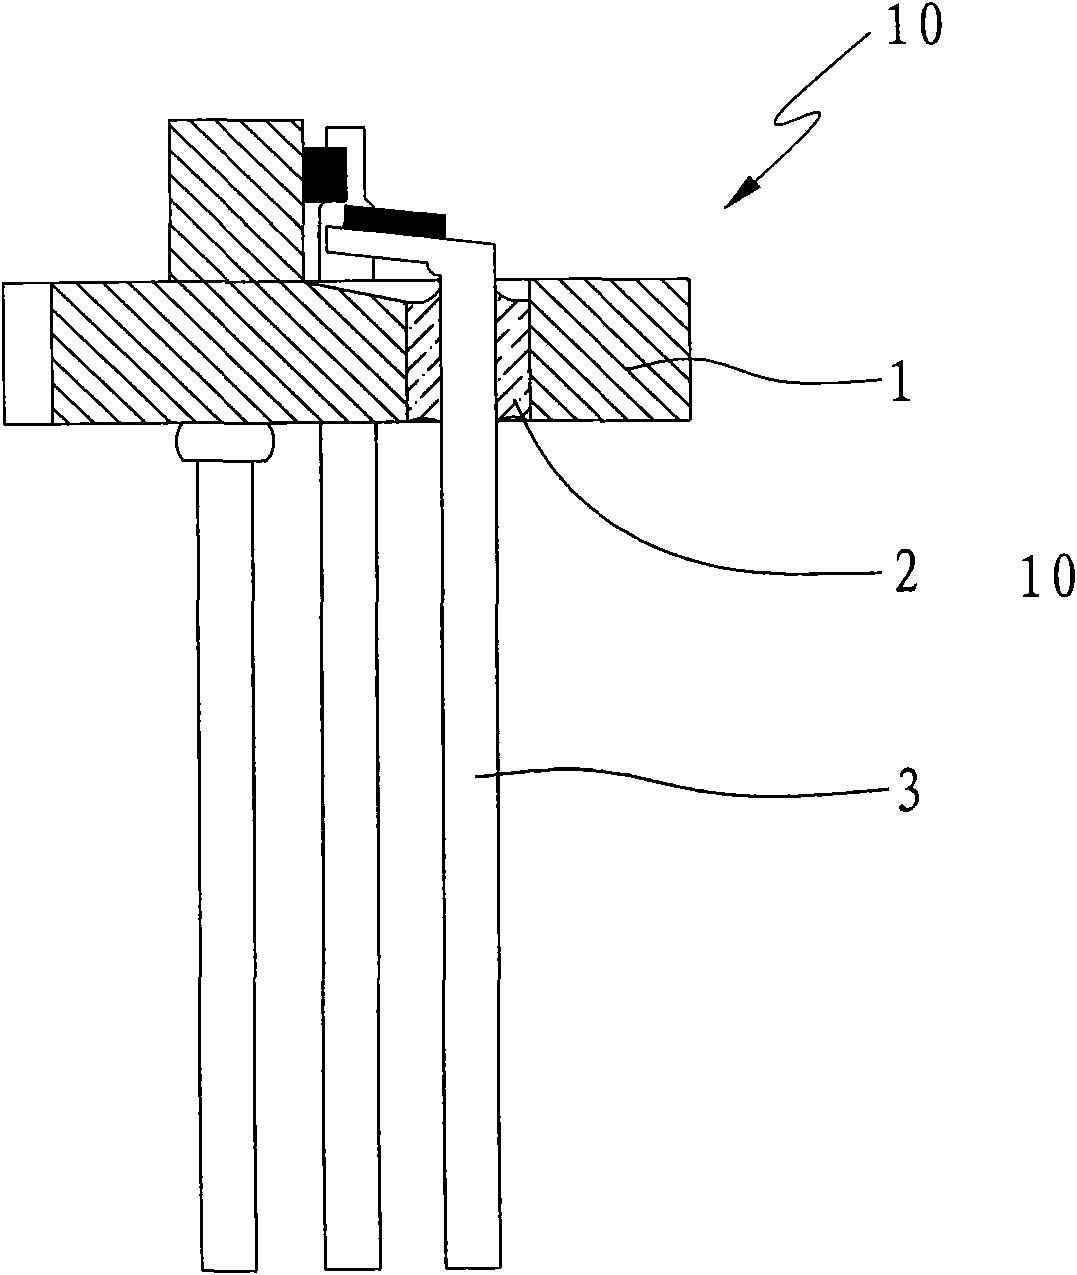 Preparation method of laser diode packaging case